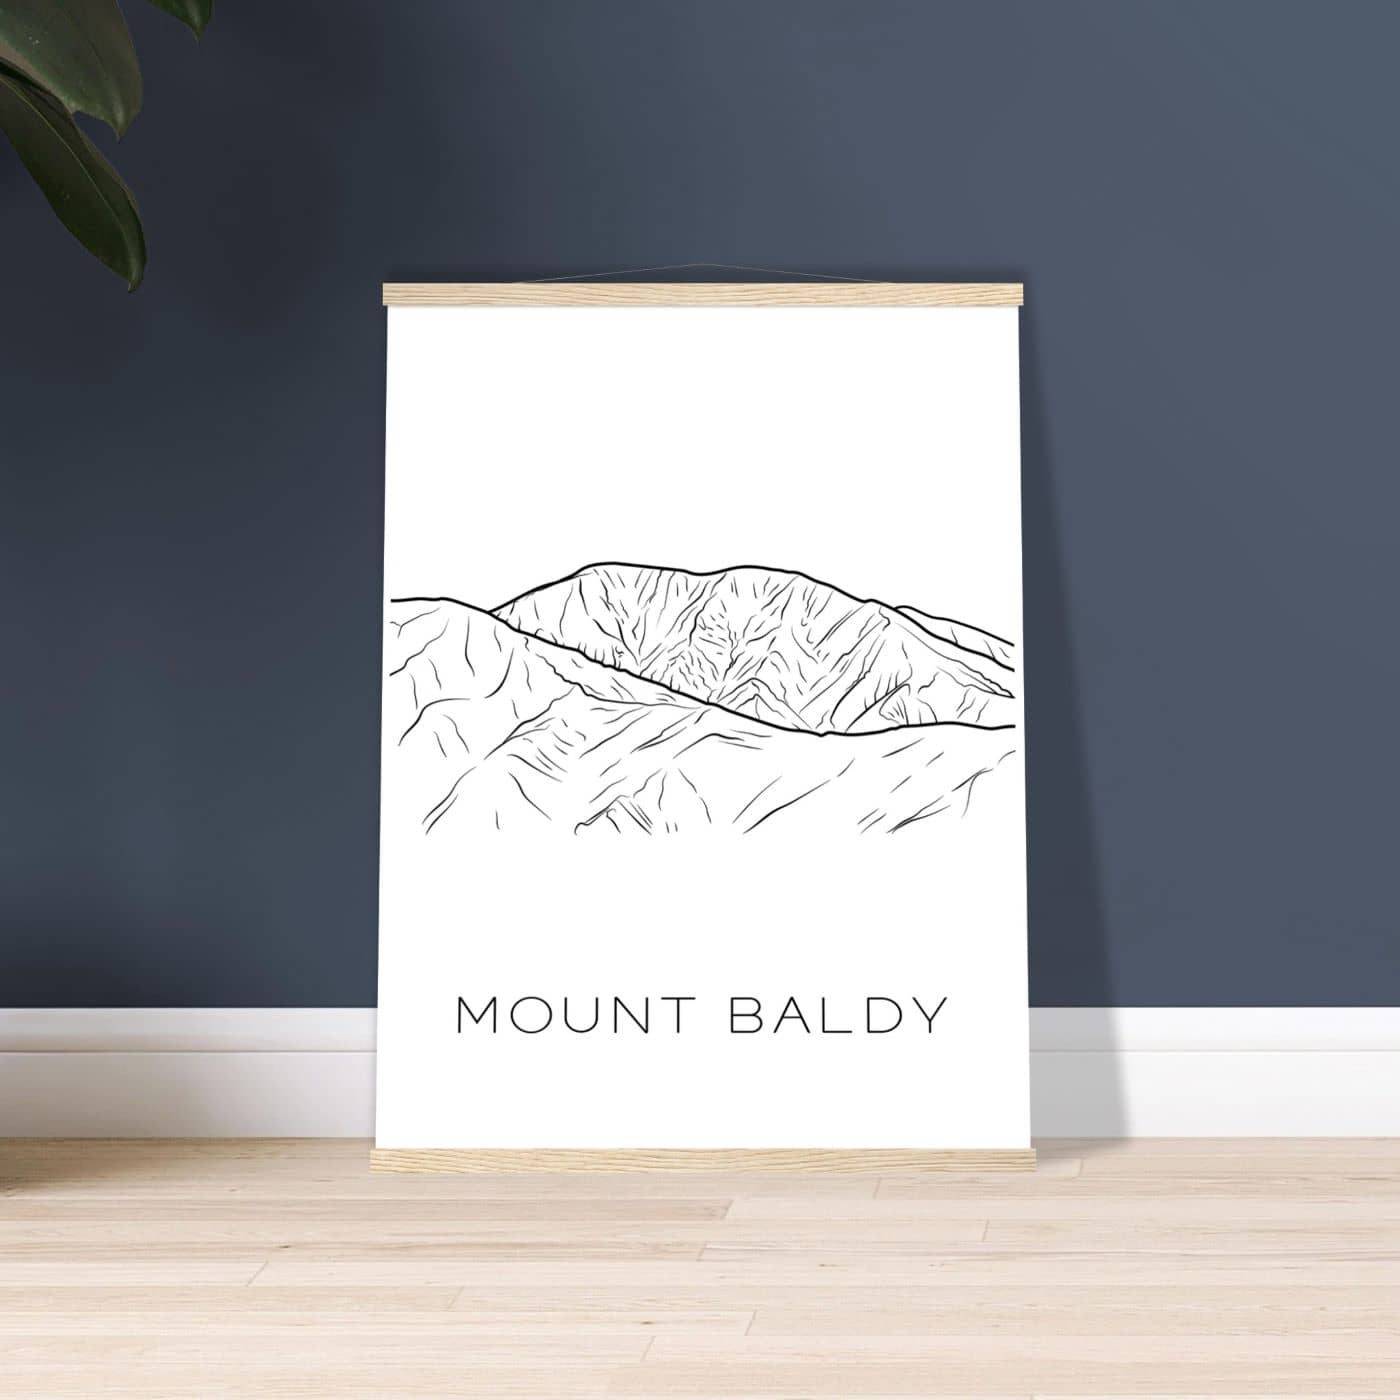 Mount Baldy - Black & White